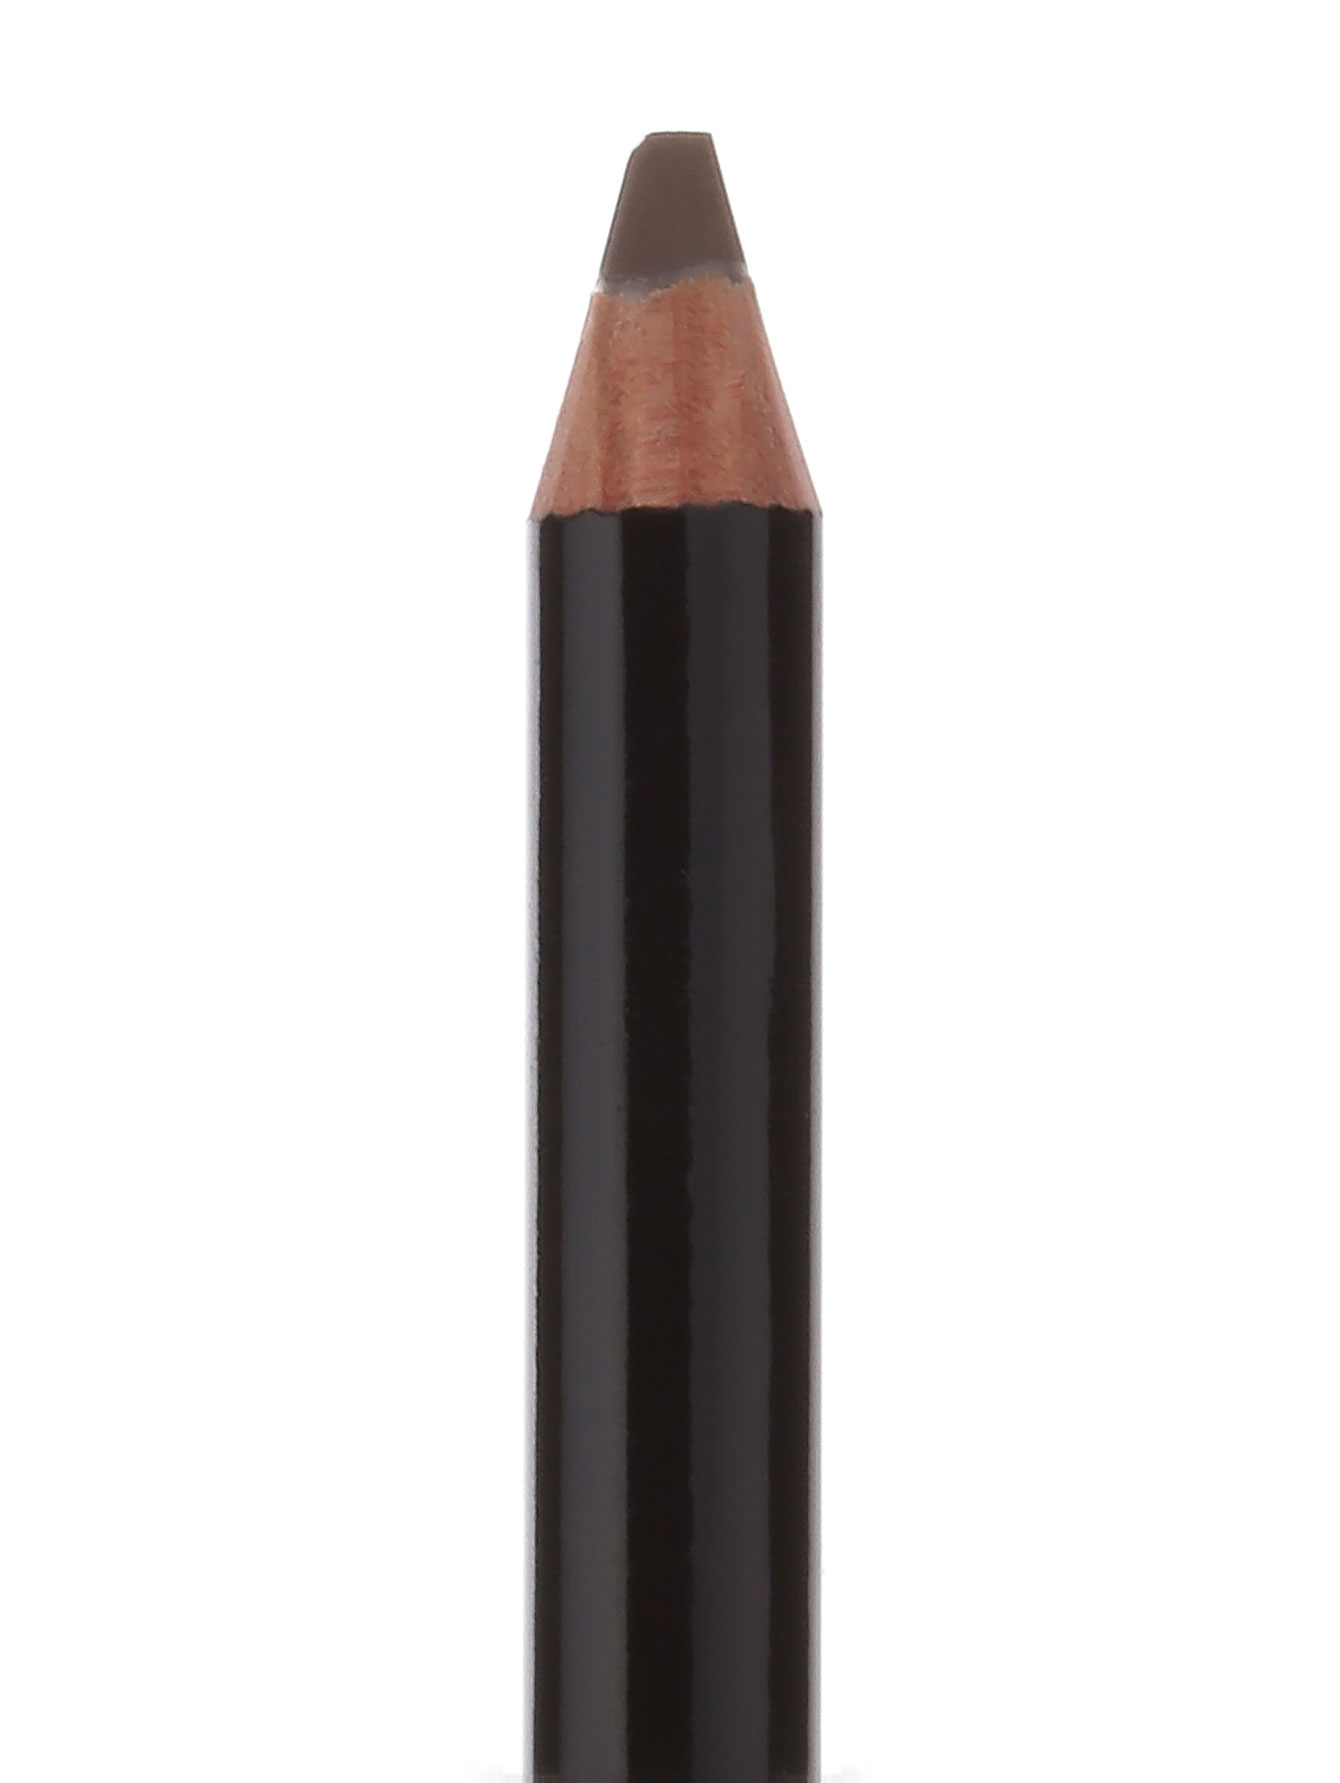  Карандаш для бровей - Mahogany, Brow Pencil - Модель Верх-Низ